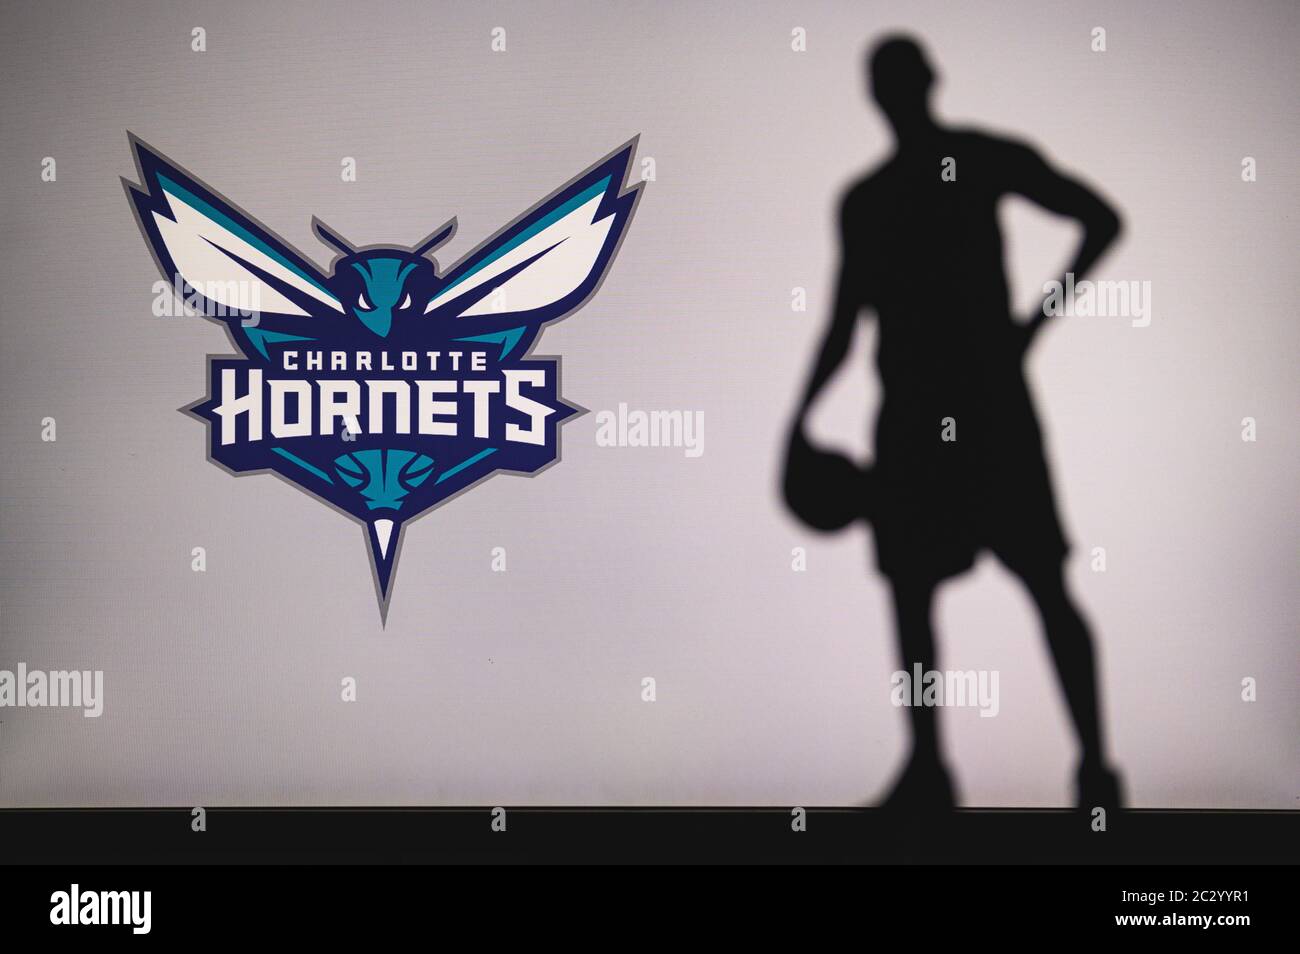 NEW YORK, USA, 18 GIU 2020: Charlotte Hornets logo di club di basket professionale nella lega americana. Silhouette del giocatore di basket in primo piano. SpO Foto Stock